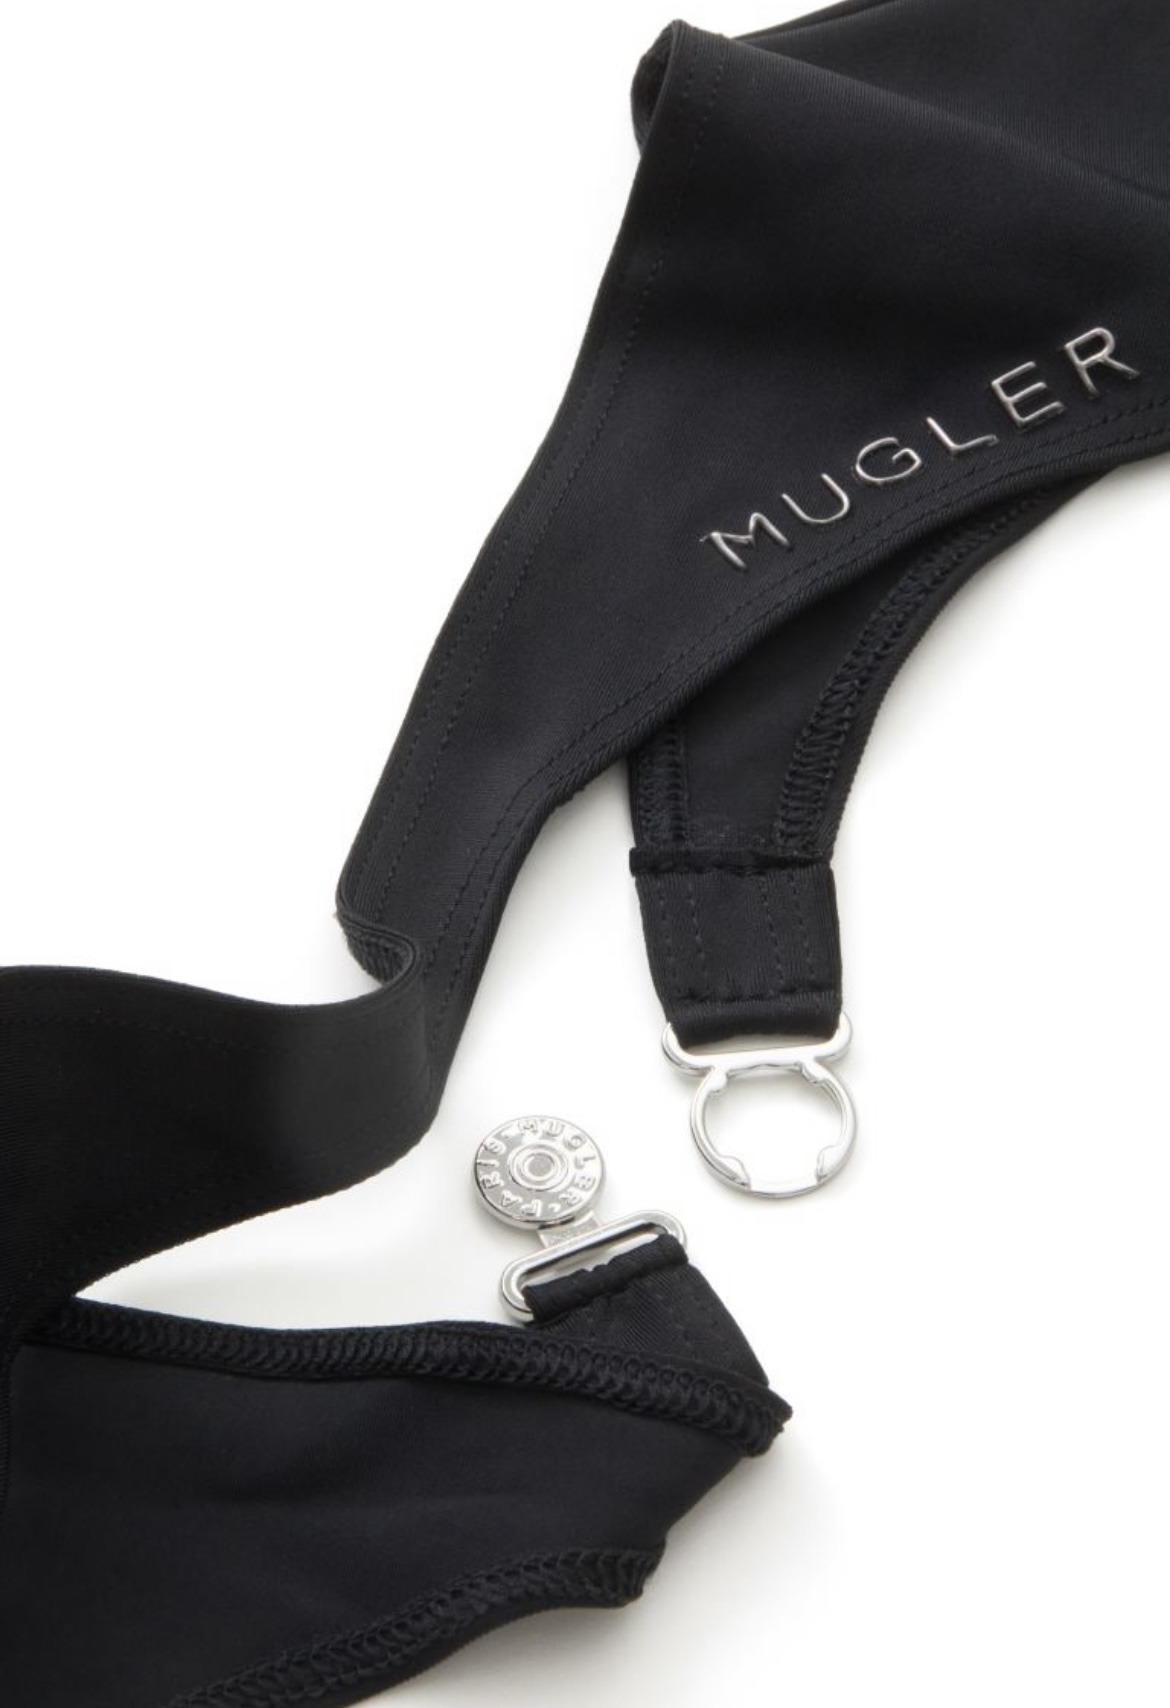 Mugler H&M セカンドスキングローブ ブラック 手袋 L-